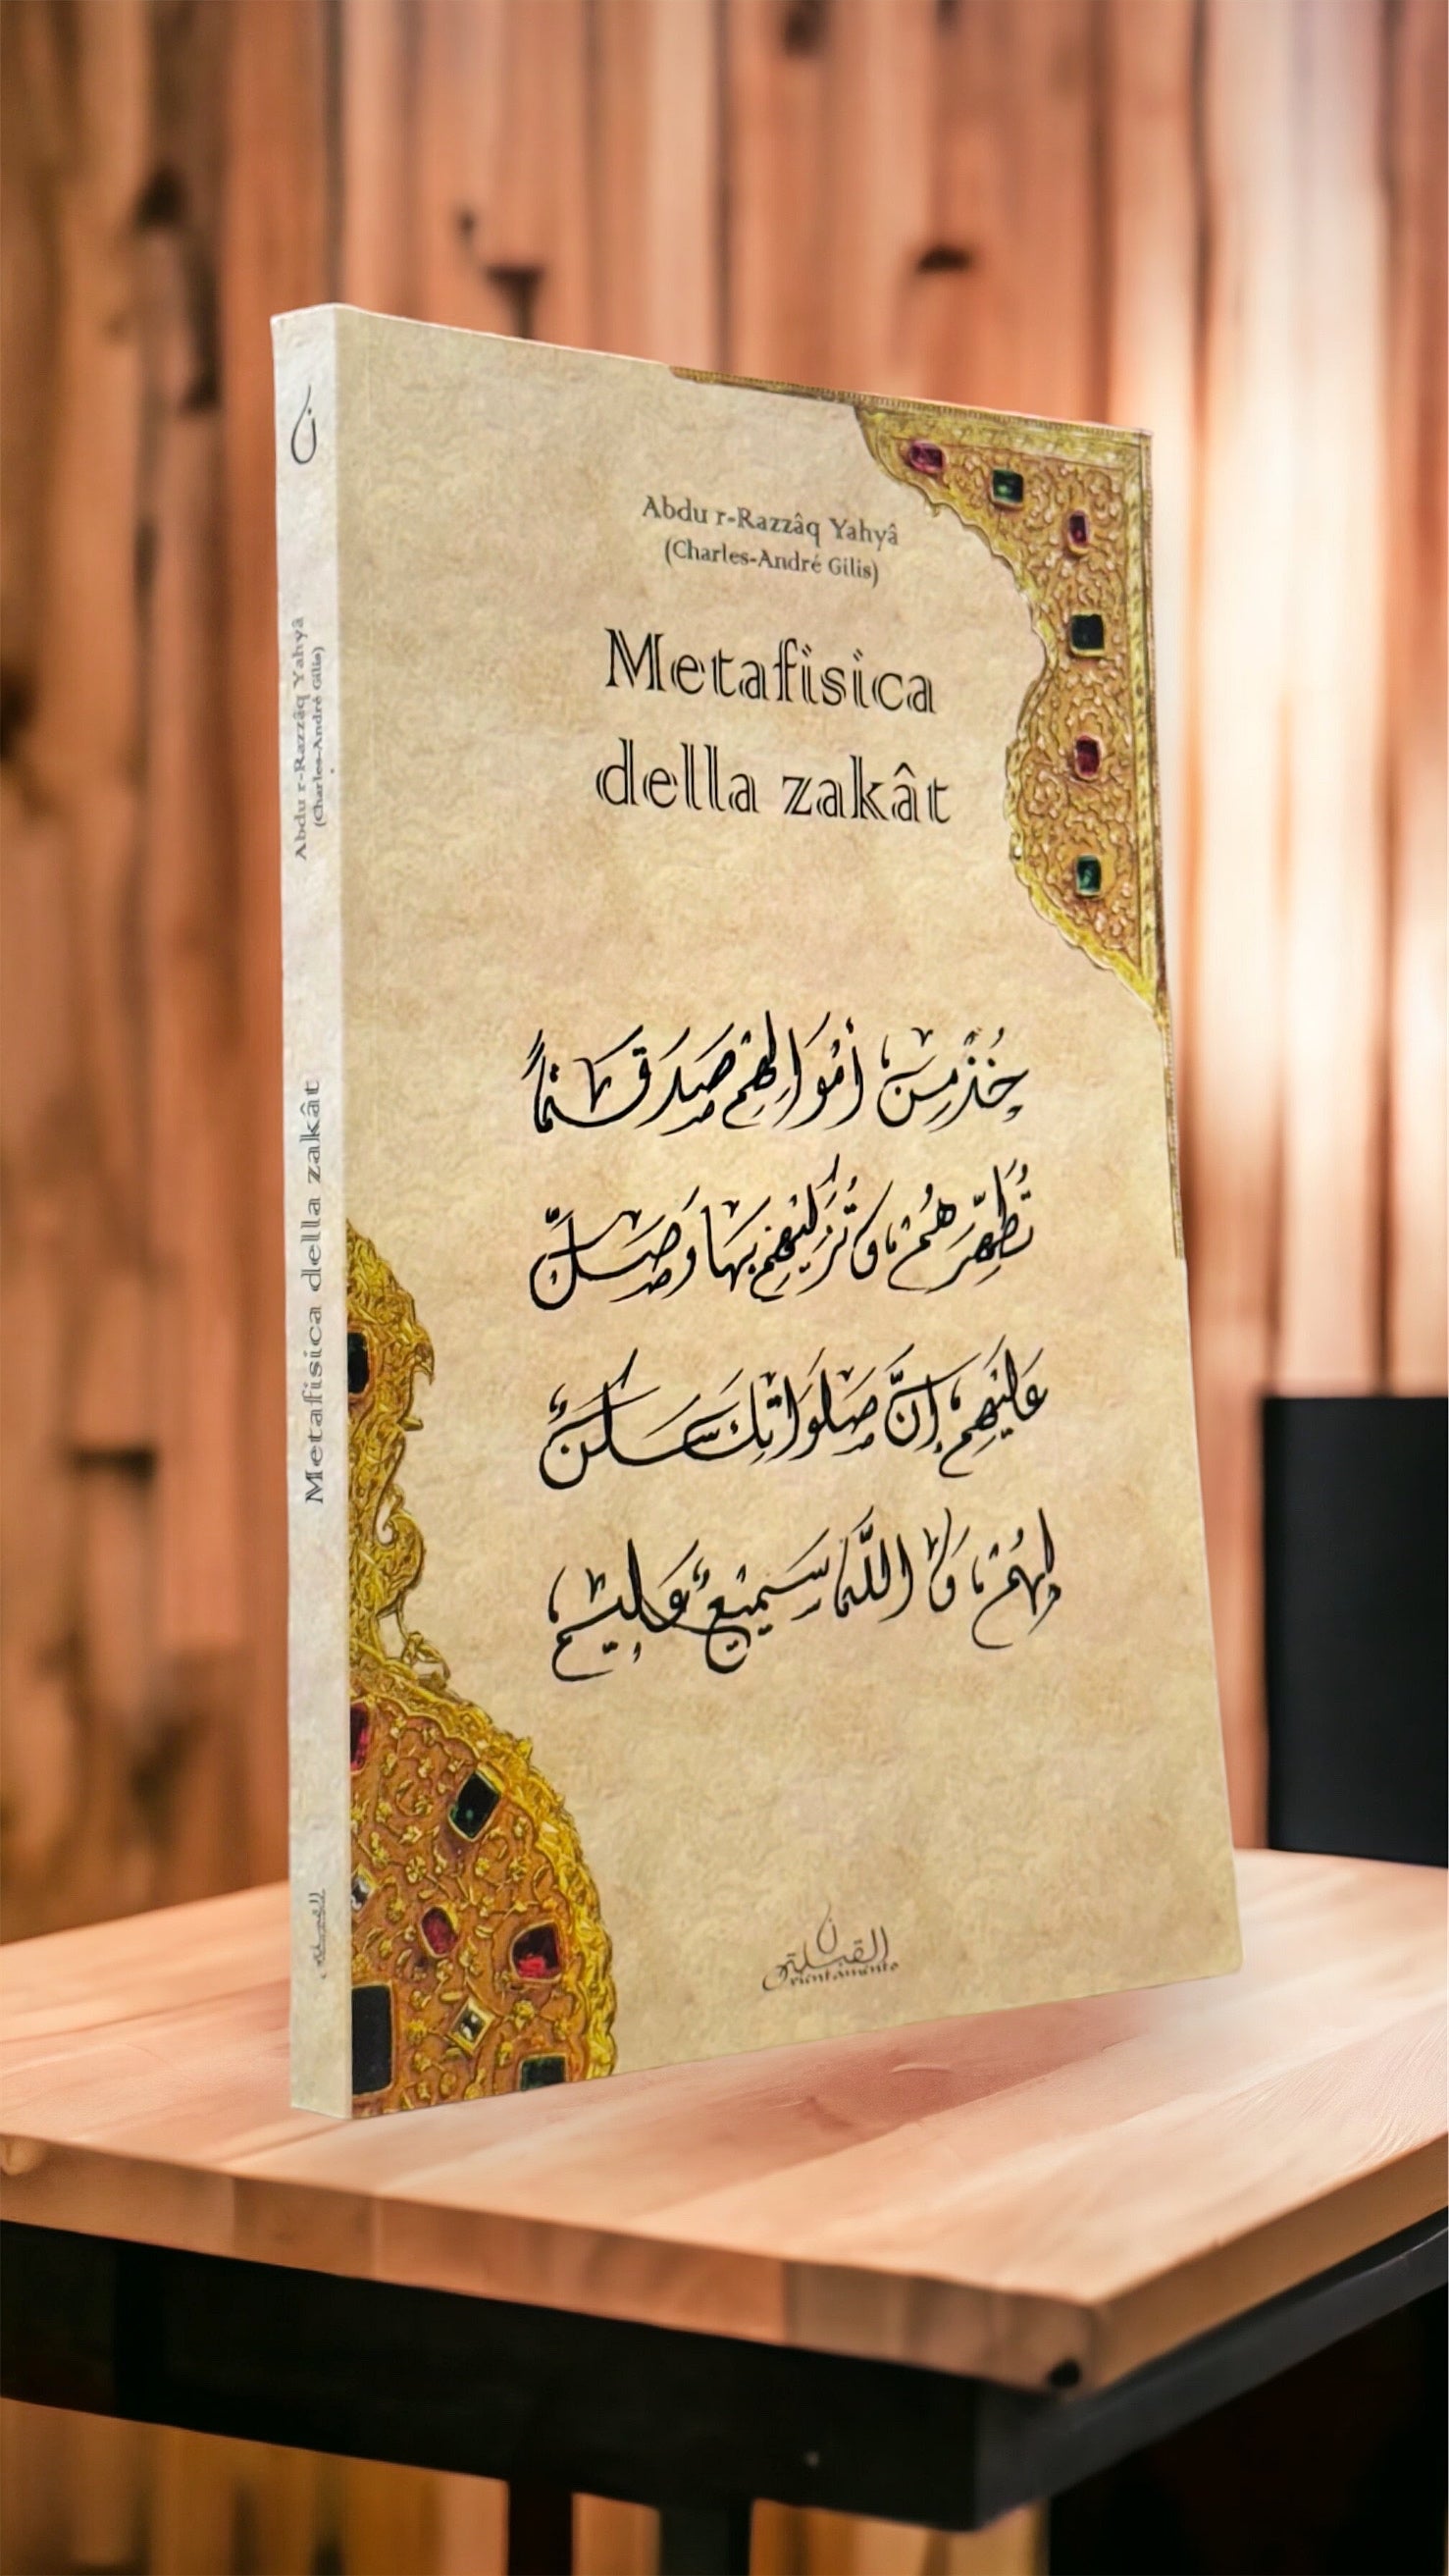 Metafisica della zakat - Hijab Paradise - Libreria islamica- abdu Razzaq yahya - pilastri islam - purificazione - diritto di allah- purificazione